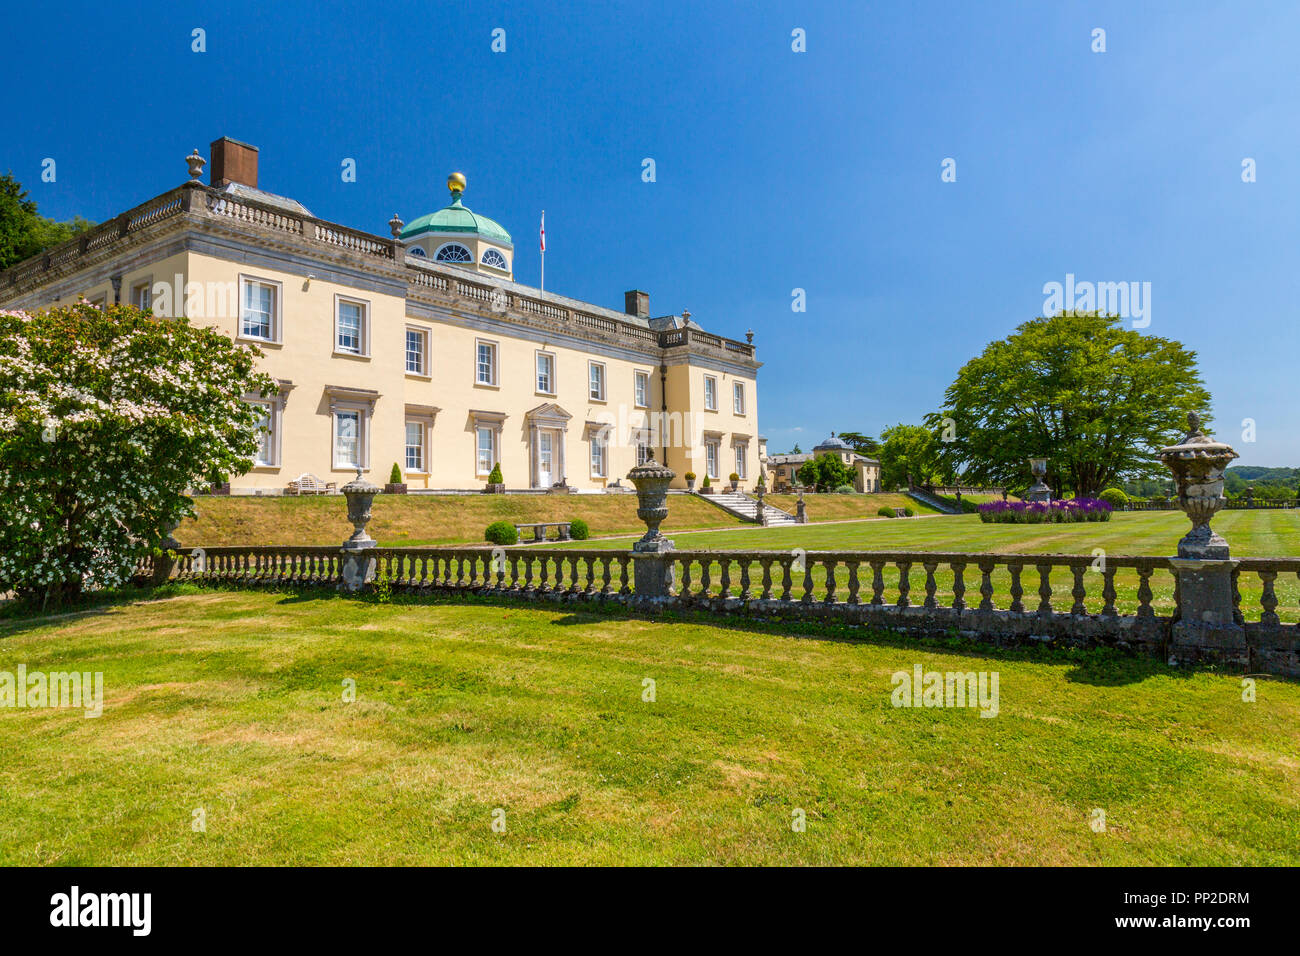 Impresionante arquitectura palladiana en Castle Hill House y jardines, cerca Filleigh, Devon, Inglaterra, Reino Unido. Foto de stock